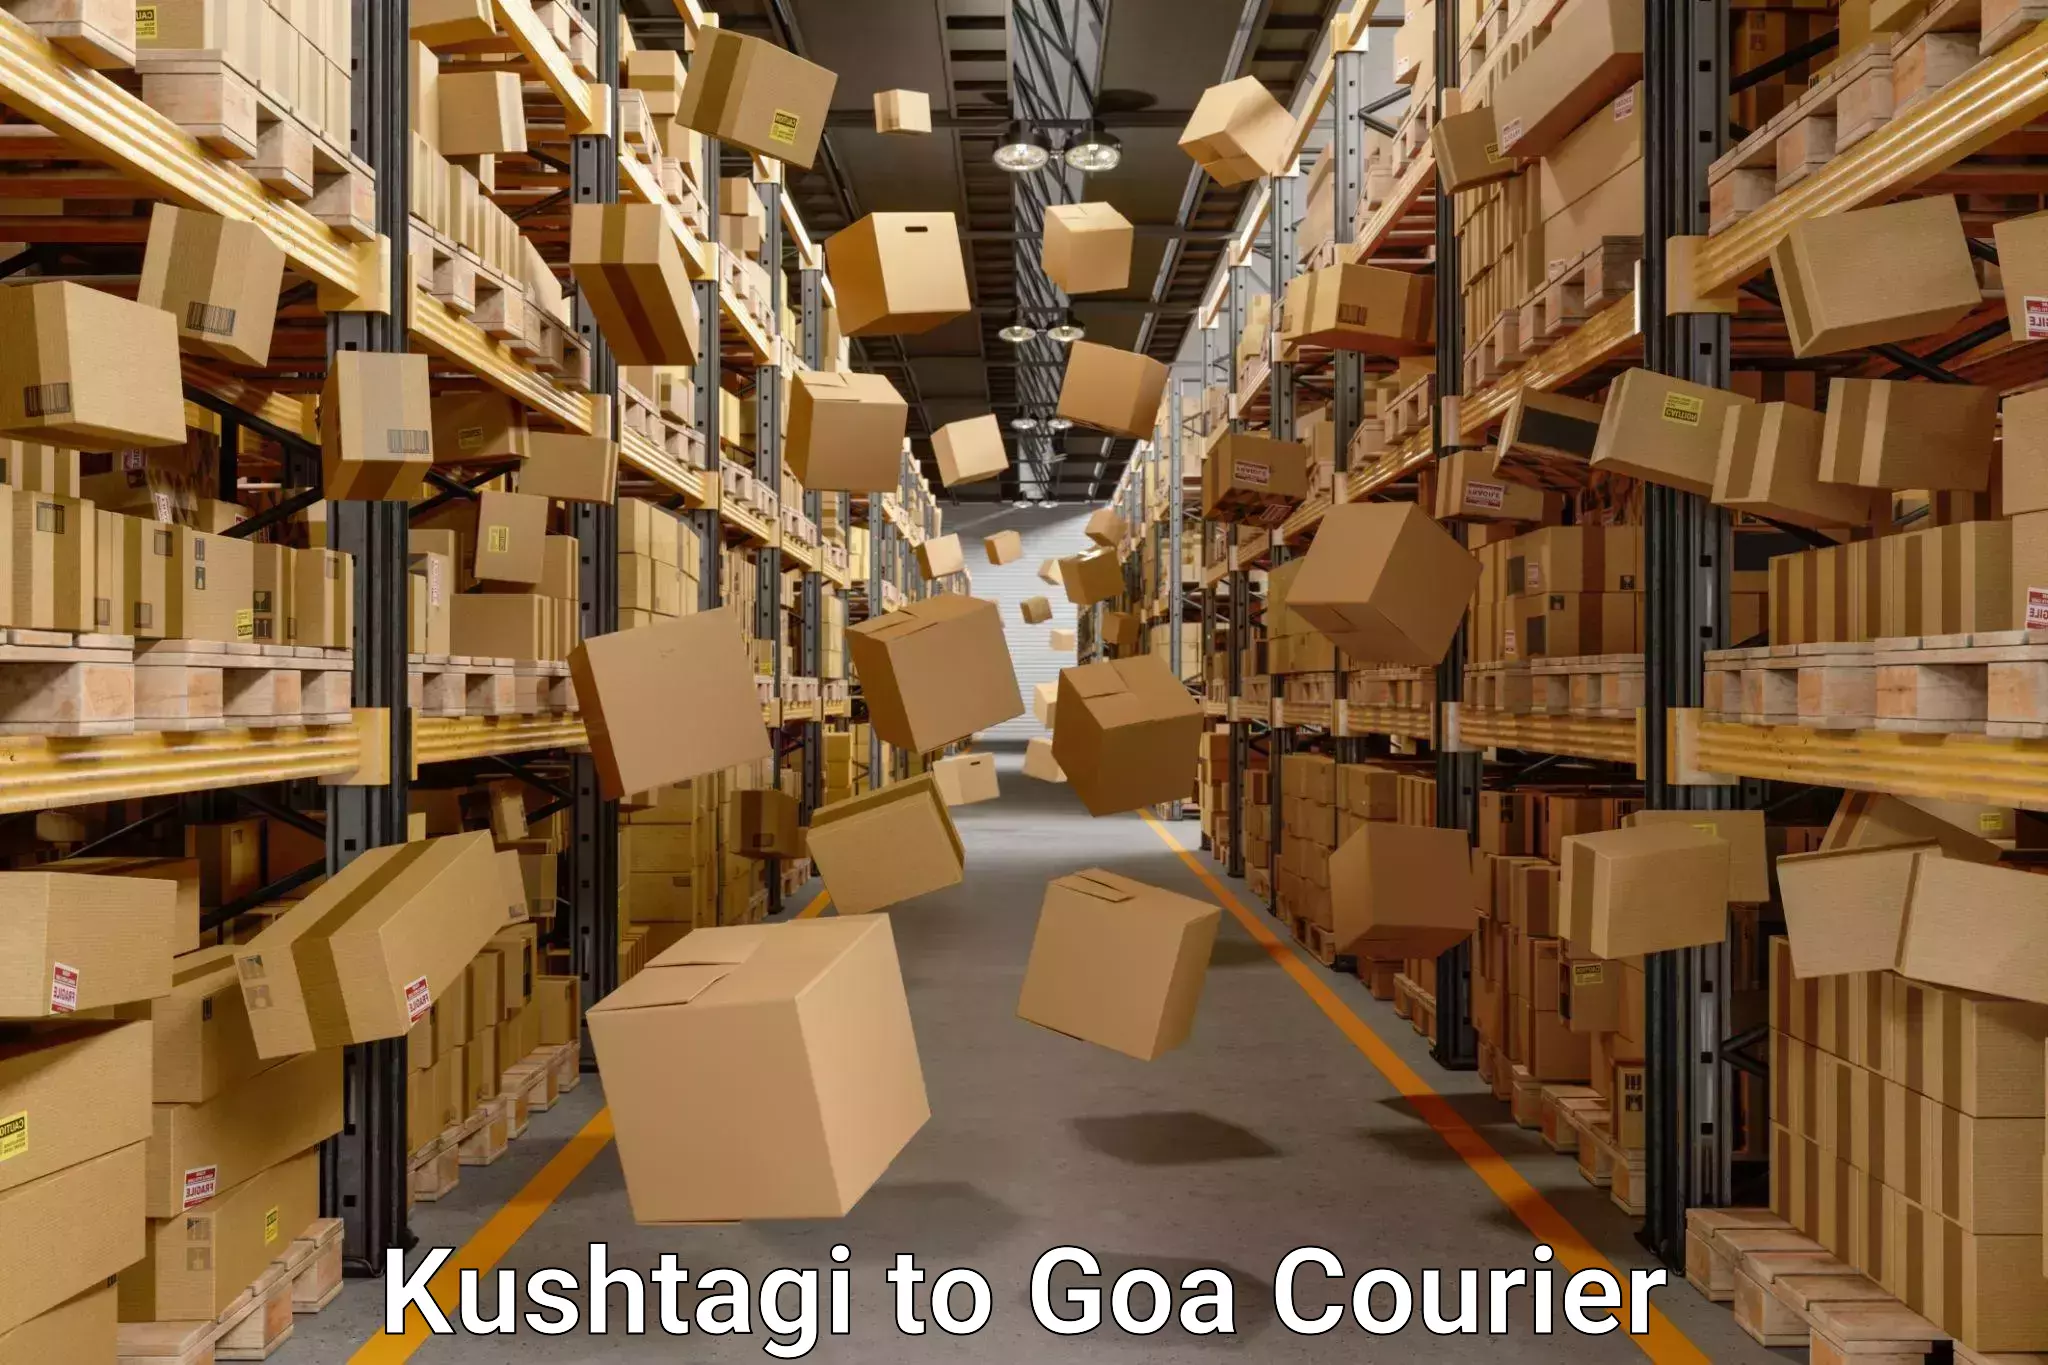 Moving and packing experts Kushtagi to IIT Goa